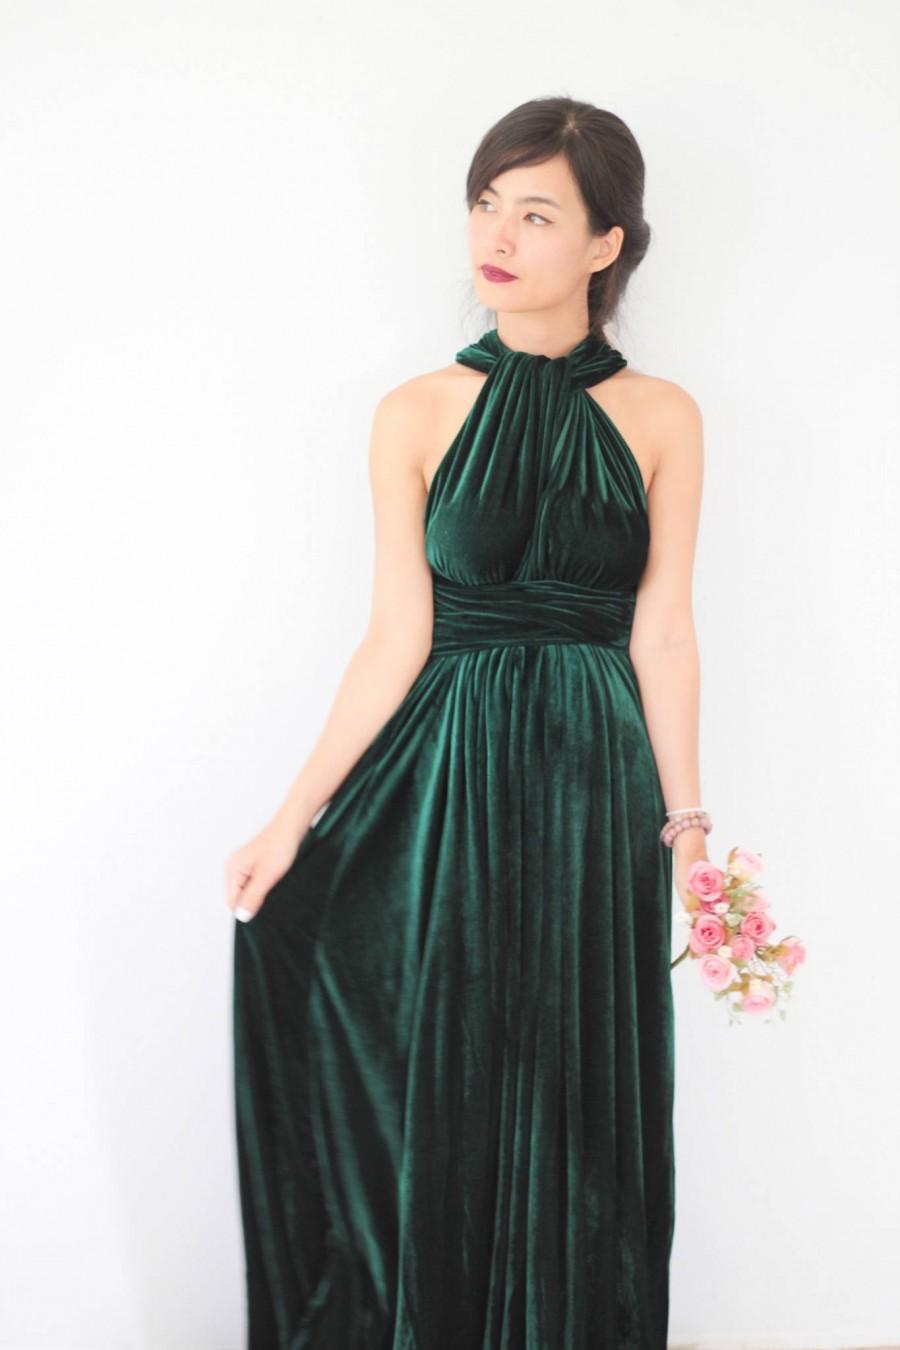 زفاف - Green Velvet Dress, Bridesmaid Dress, Infinity Dress, Prom Dress, Convertible Dress, Wrap Dress, Long Dress, Eveing Dress, Ball Gown